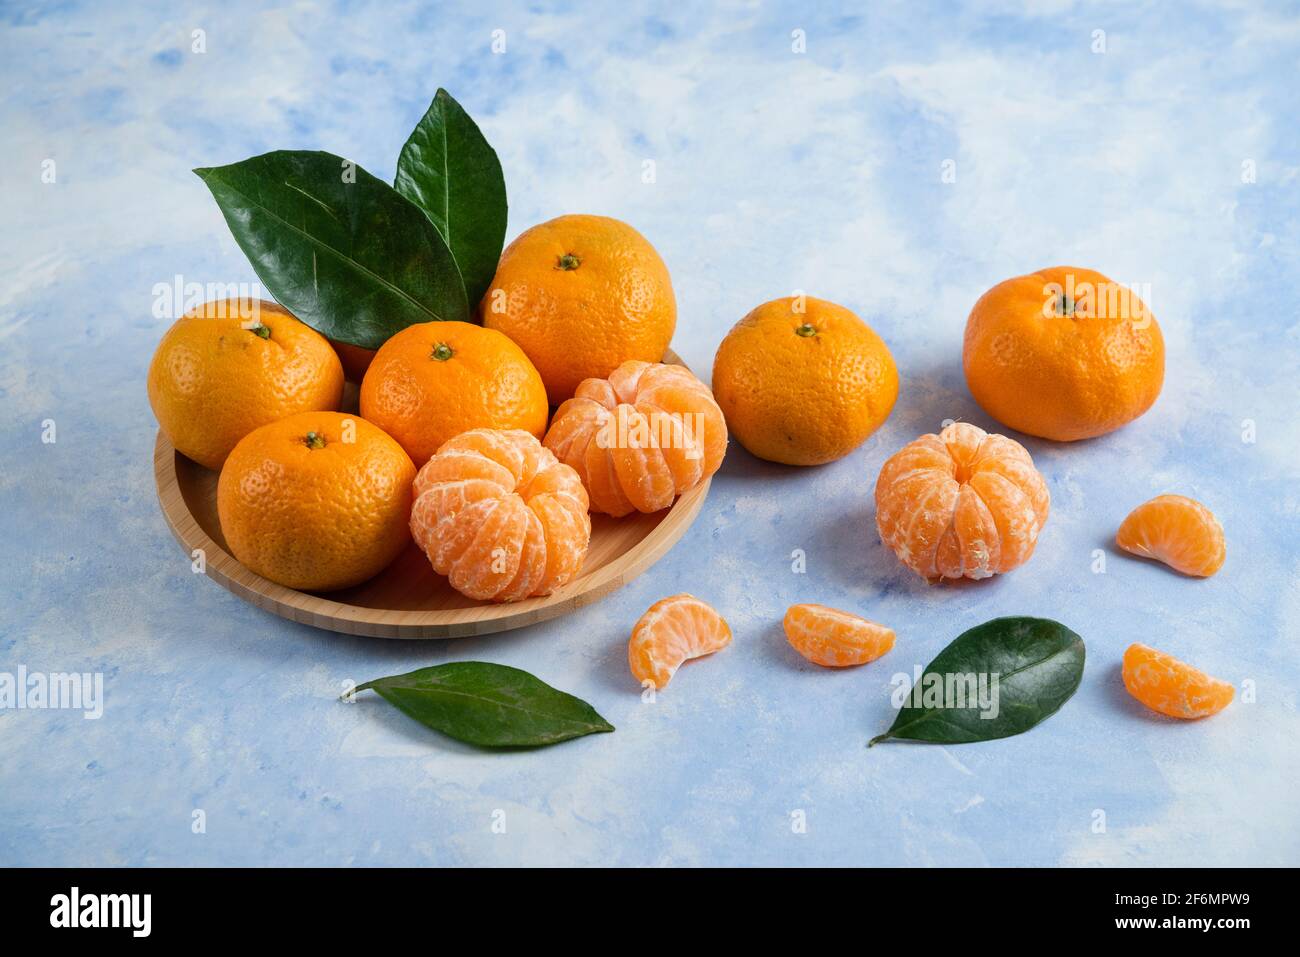 Season fruit. Peeled or whole clementine mandarins Stock Photo